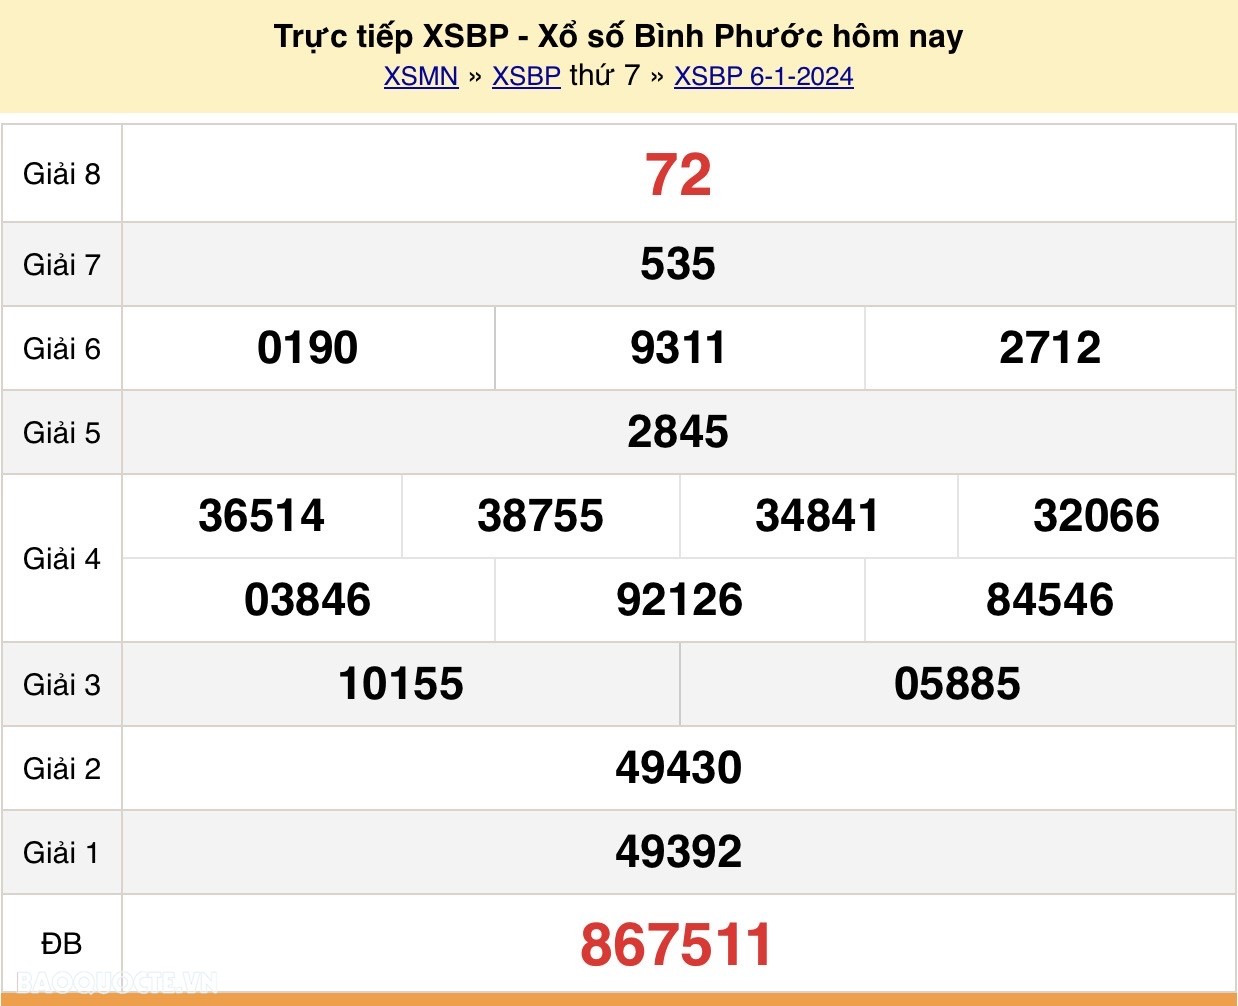 XSBP 6/1, Trực tiếp kết quả xổ số Bình Phước hôm nay 6/1/2024 - KQXSBP thứ 7